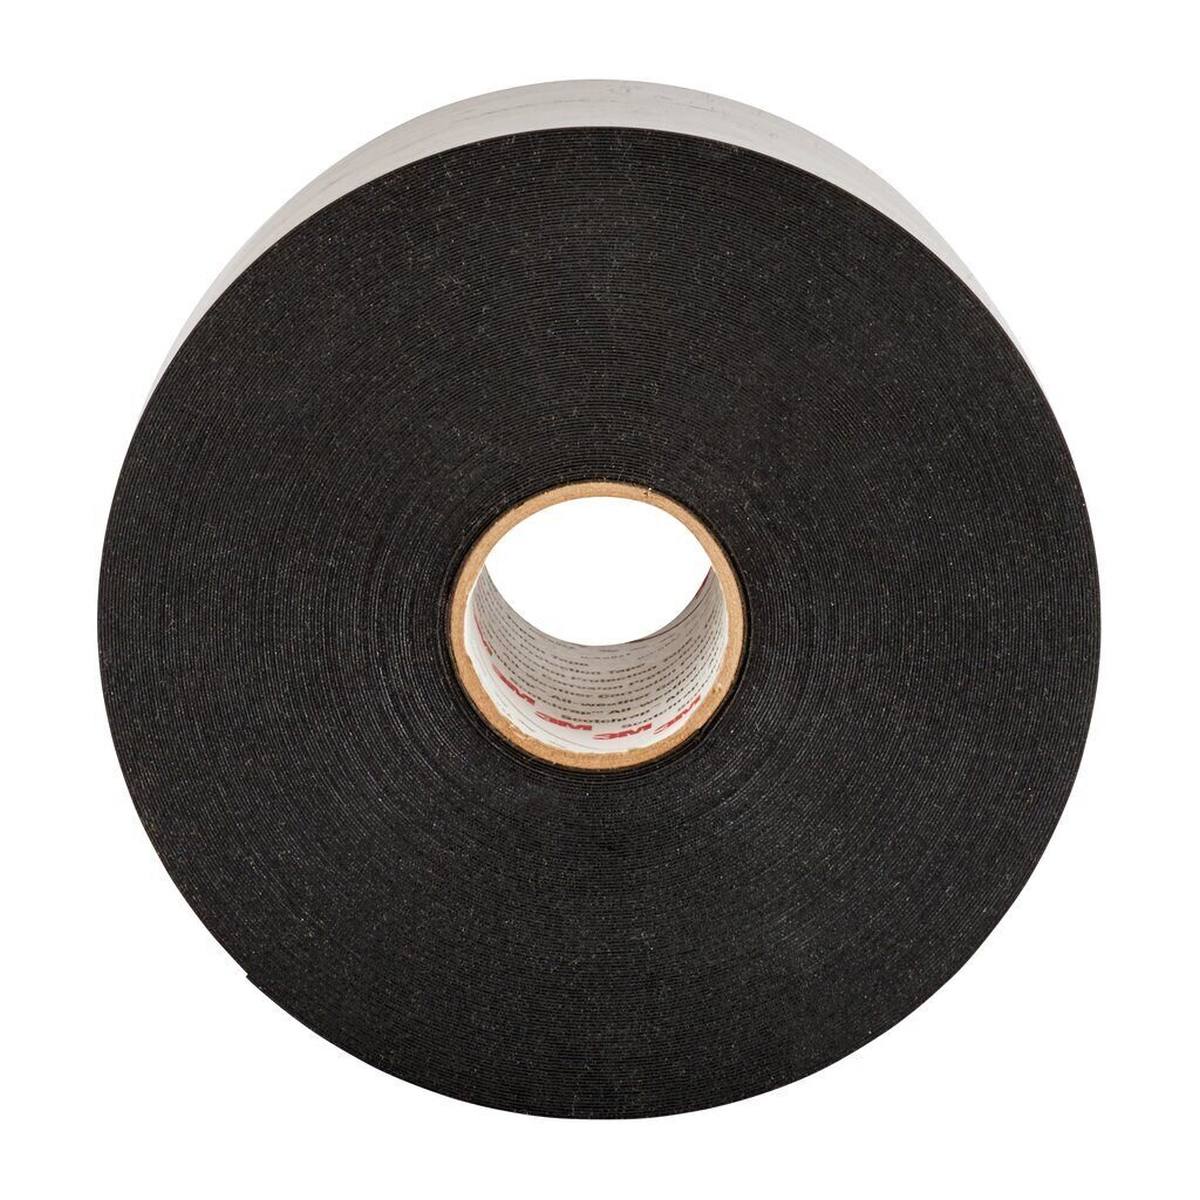 3M Scotchrap 51 corrosiewerende tape, zwart, 100 mm x 30 m, 0,5 mm